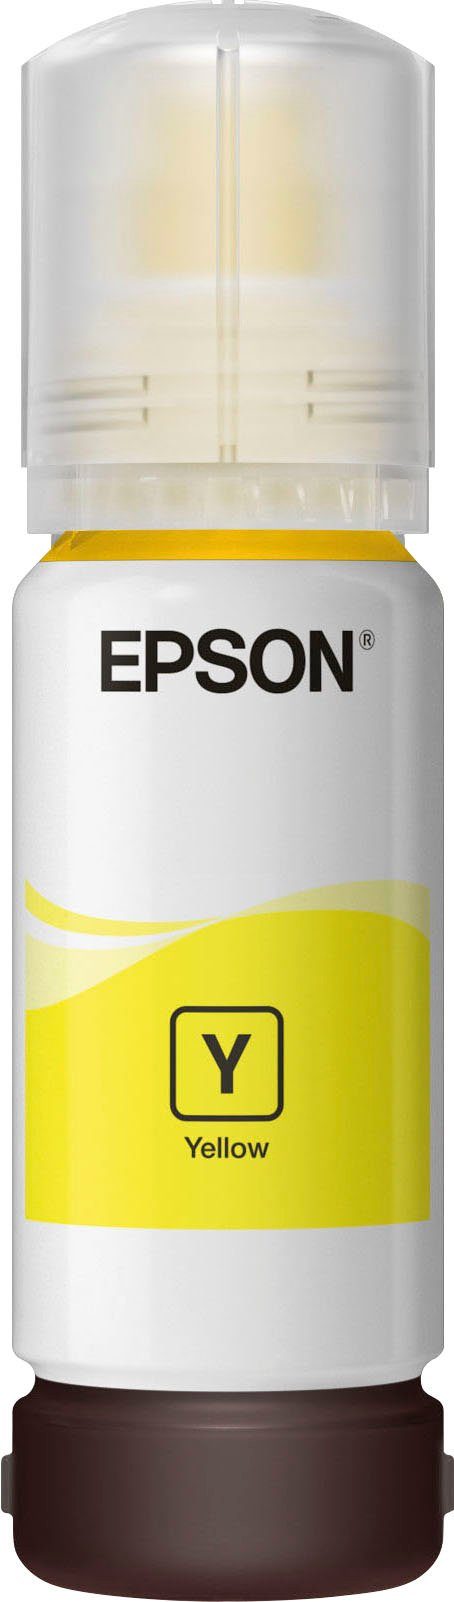 Epson Nachfülltinte gelb) (für 102 1x, 102 Nachfülltinte EcoTank Yellow EPSON, original